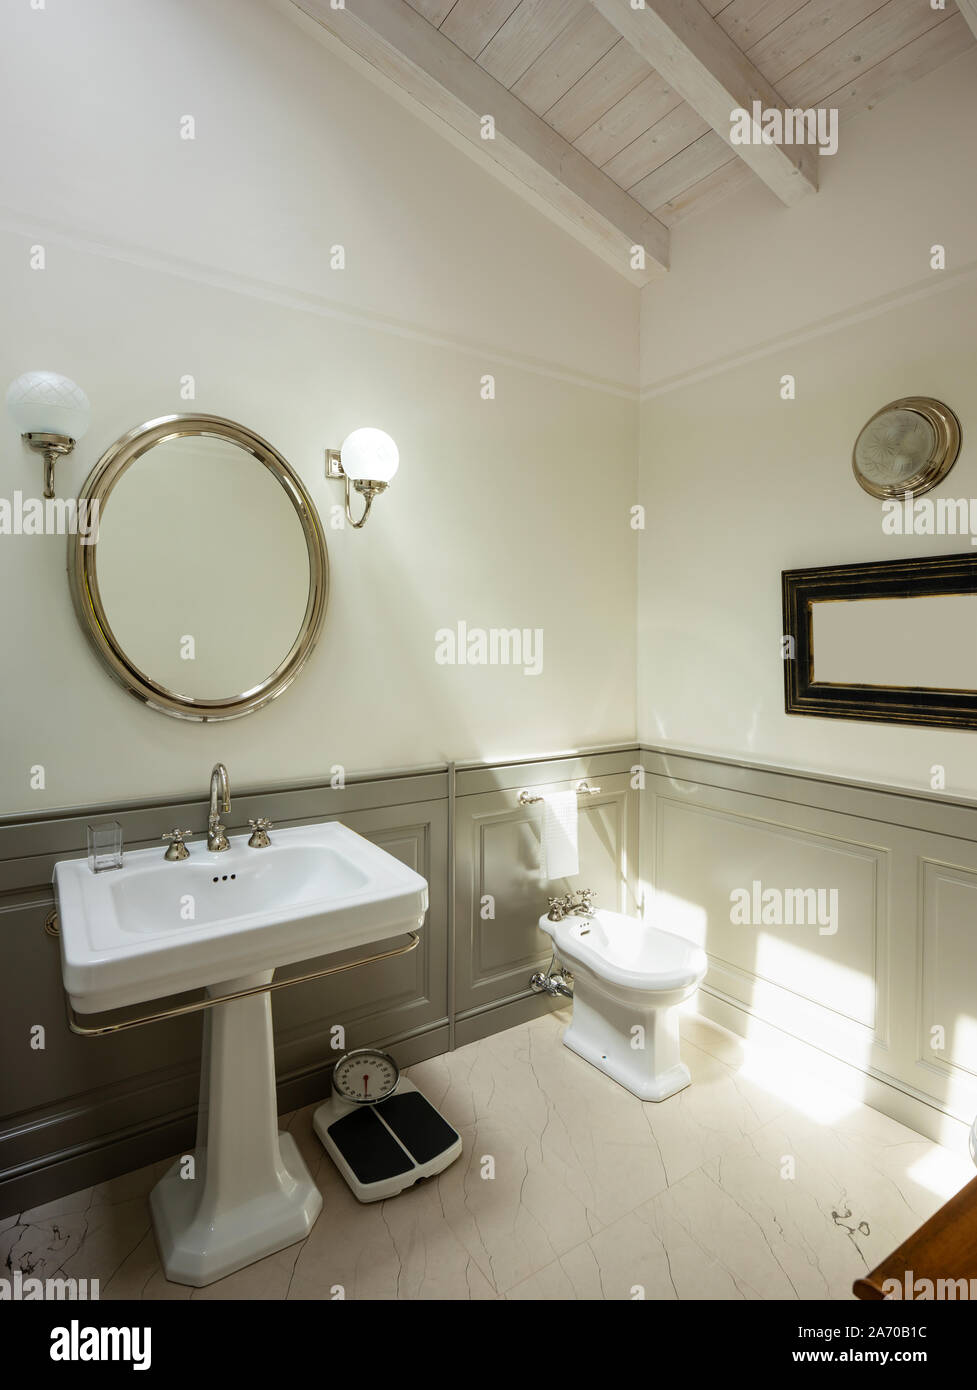 Elegante y lujoso cuarto de baño de la villa. Nadie adentro Foto de stock